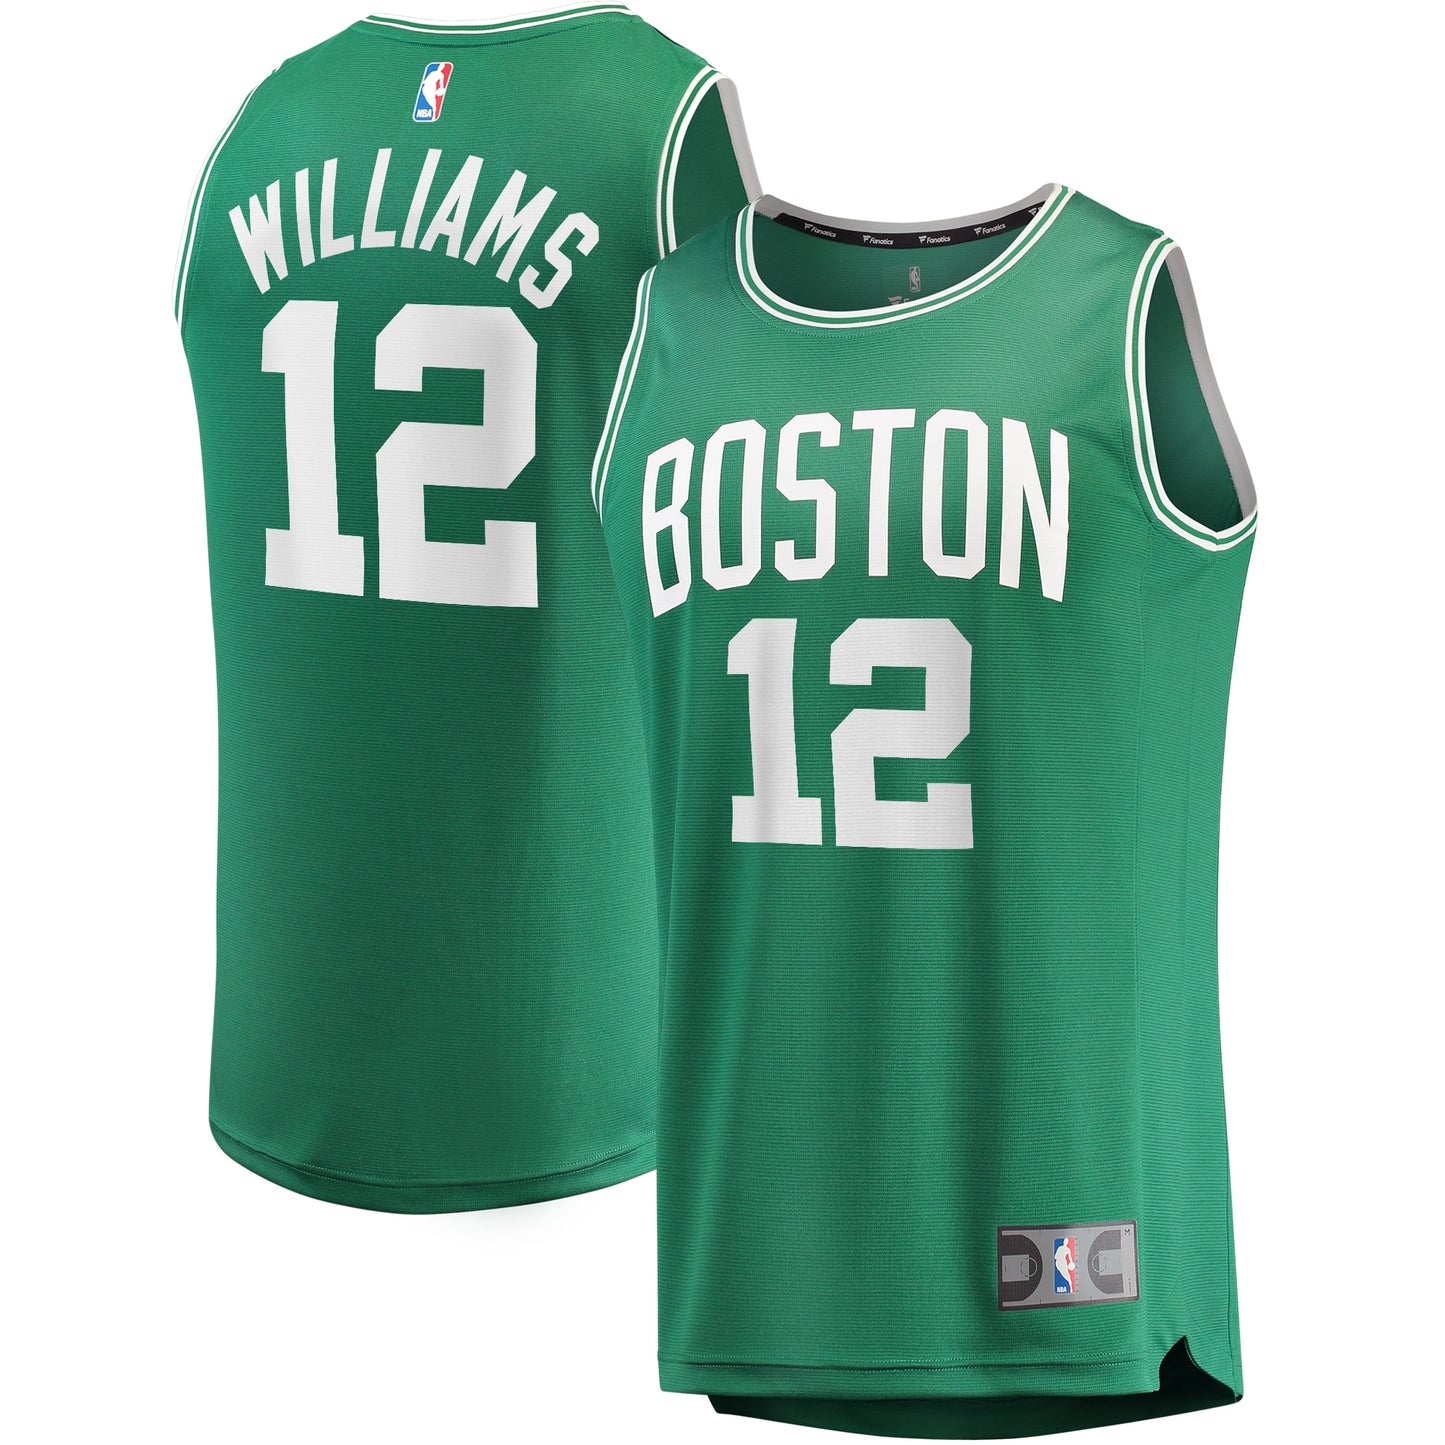 Grant Williams Boston Celtics Fanatics Branded Fast Break Replica Player Jersey - Icon Edition - Kelly Green